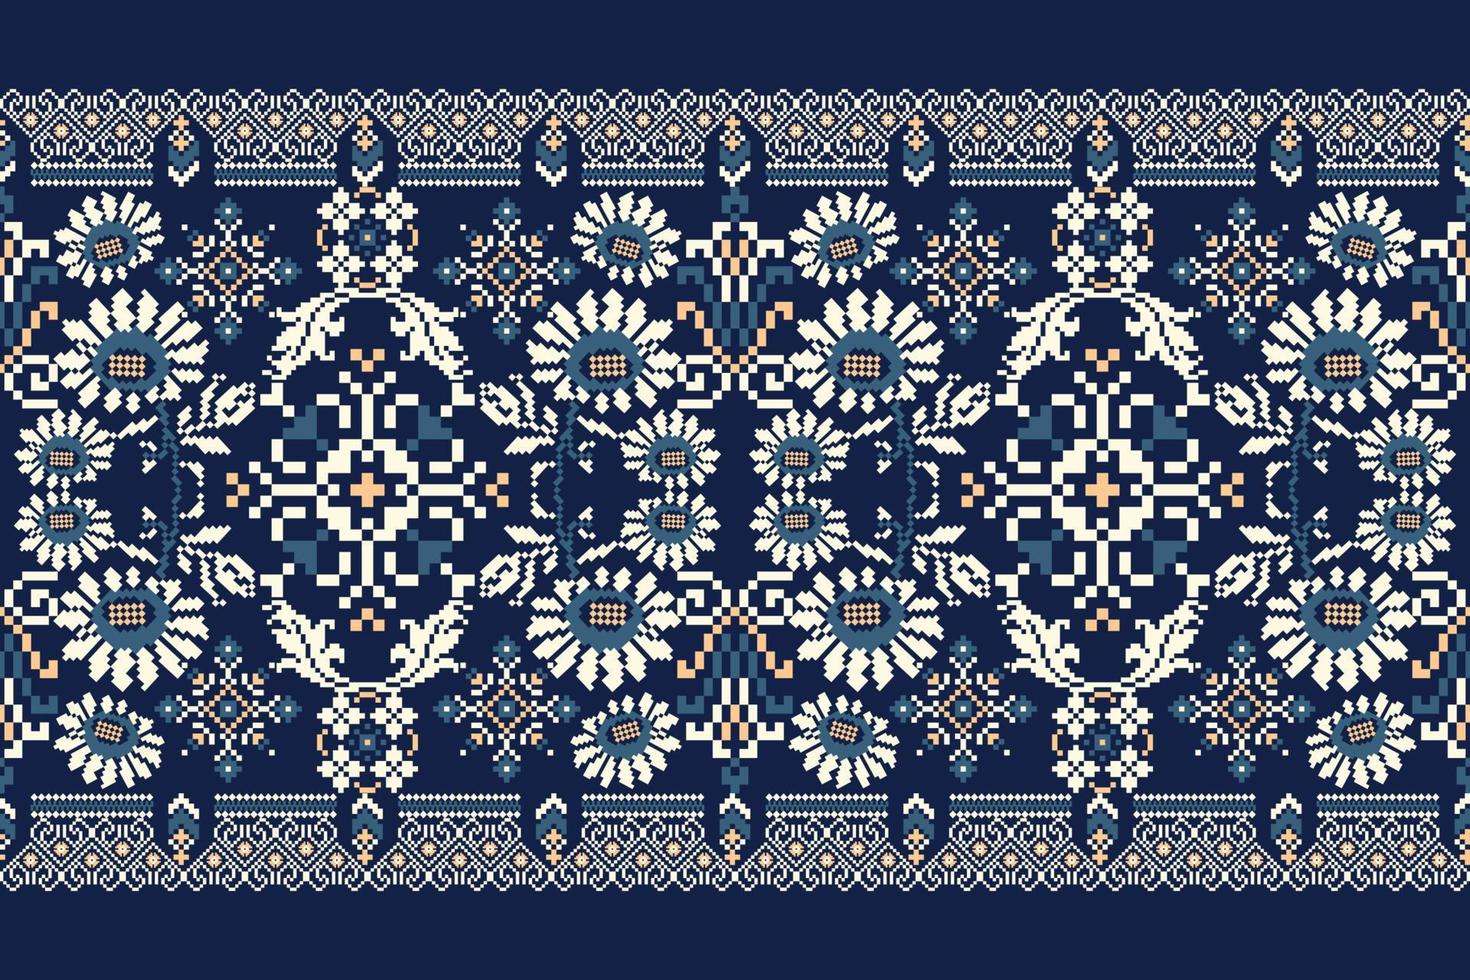 floral tricotado bordado em marinha azul background.geometric étnico oriental padronizar tradicional.asteca estilo abstrato vetor ilustração.design para textura,tecido,vestuário,embrulho,decoração,cachecol.